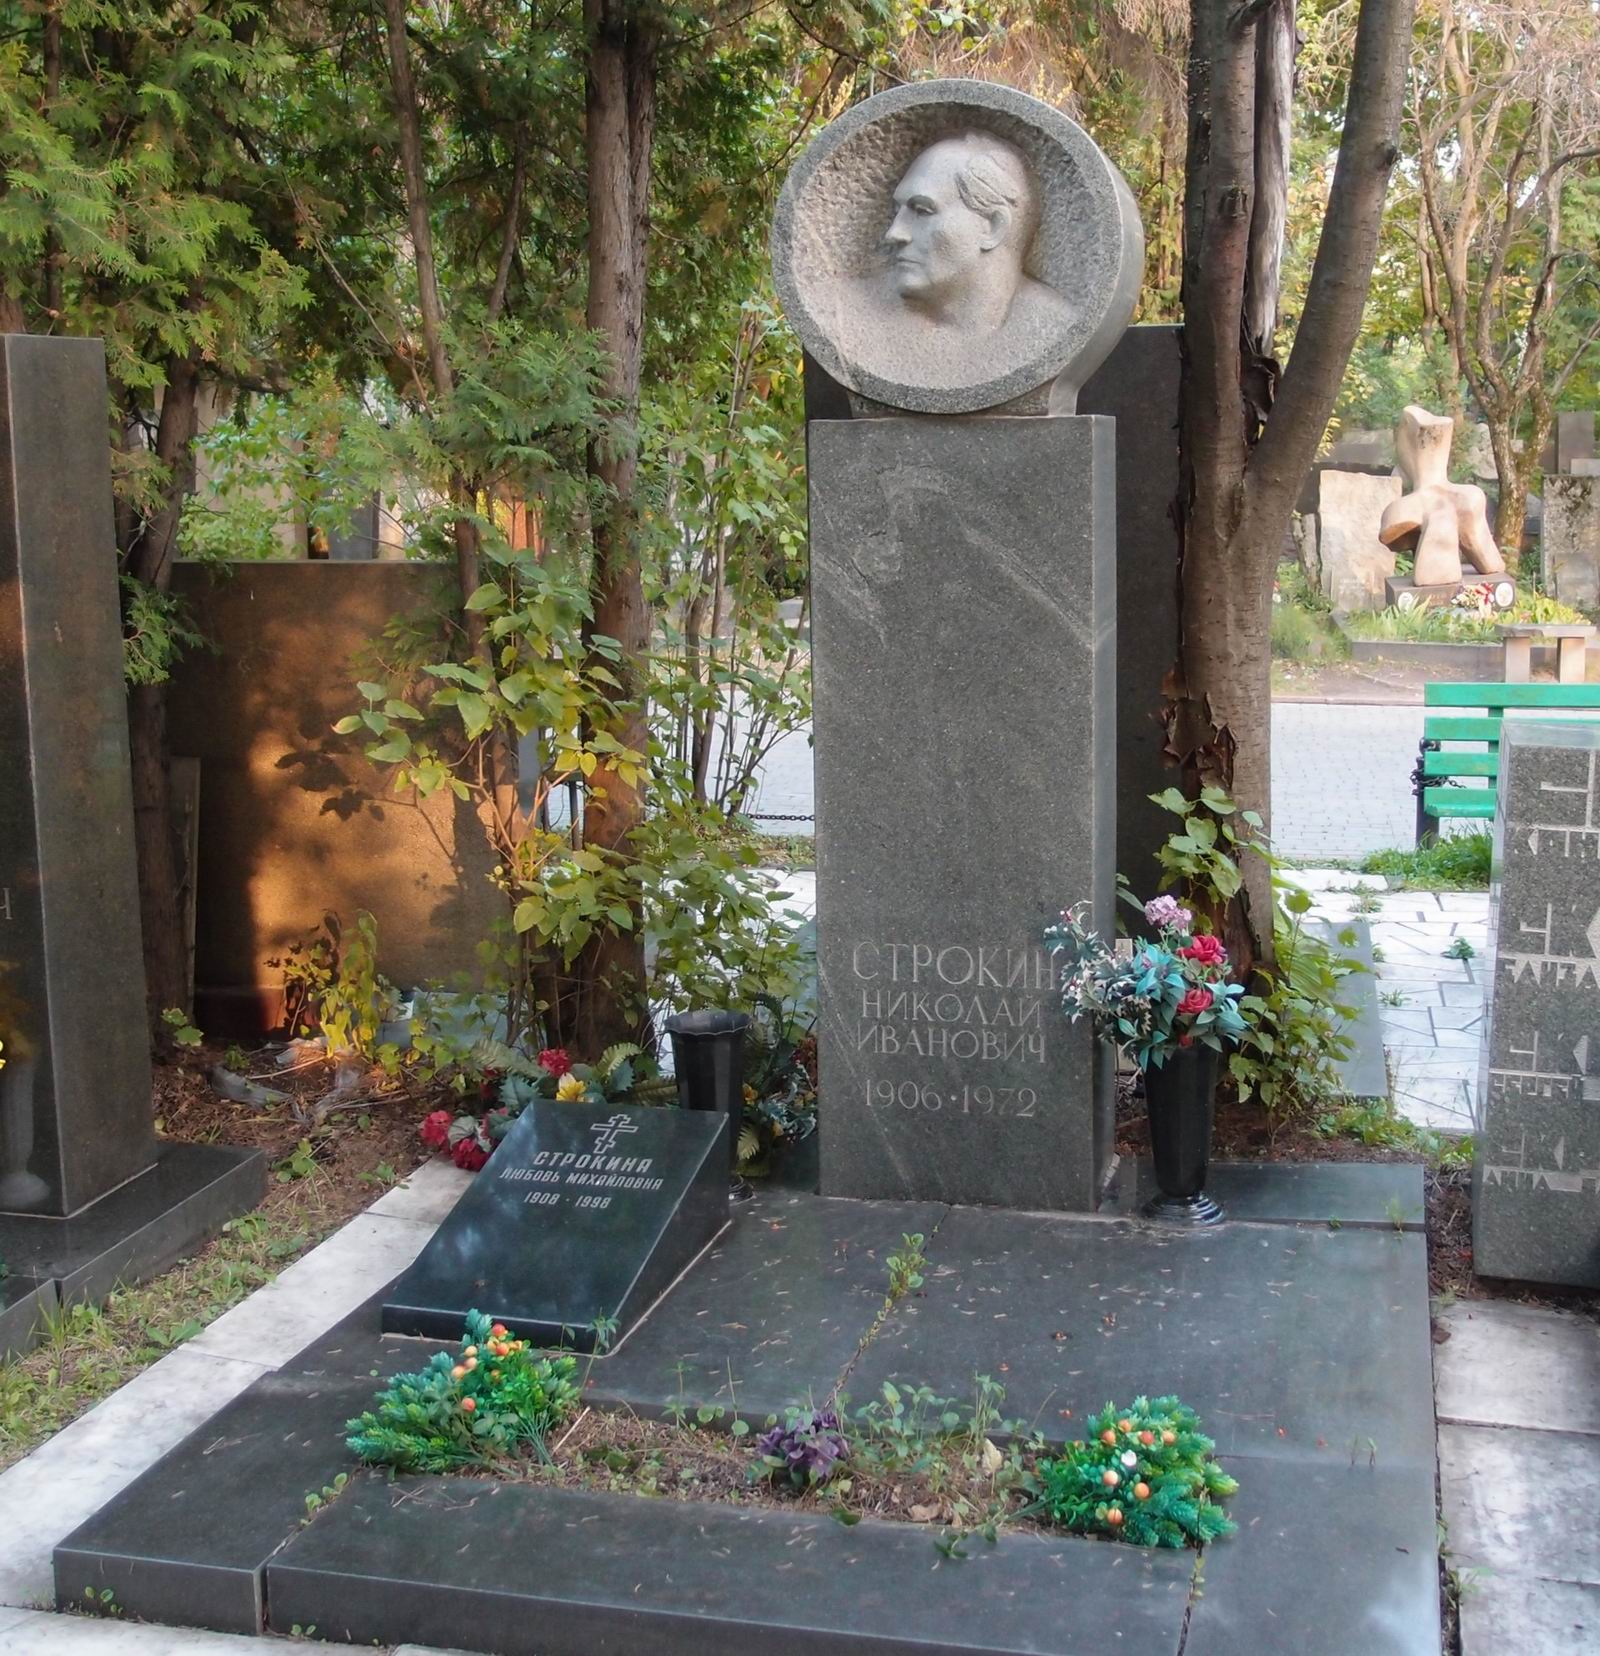 Памятник на могиле Строкина Н.И. (1906-1972), ск. Н.Никогосян, арх. Т.Никогосян, на Новодевичьем кладбище (7-2-18).